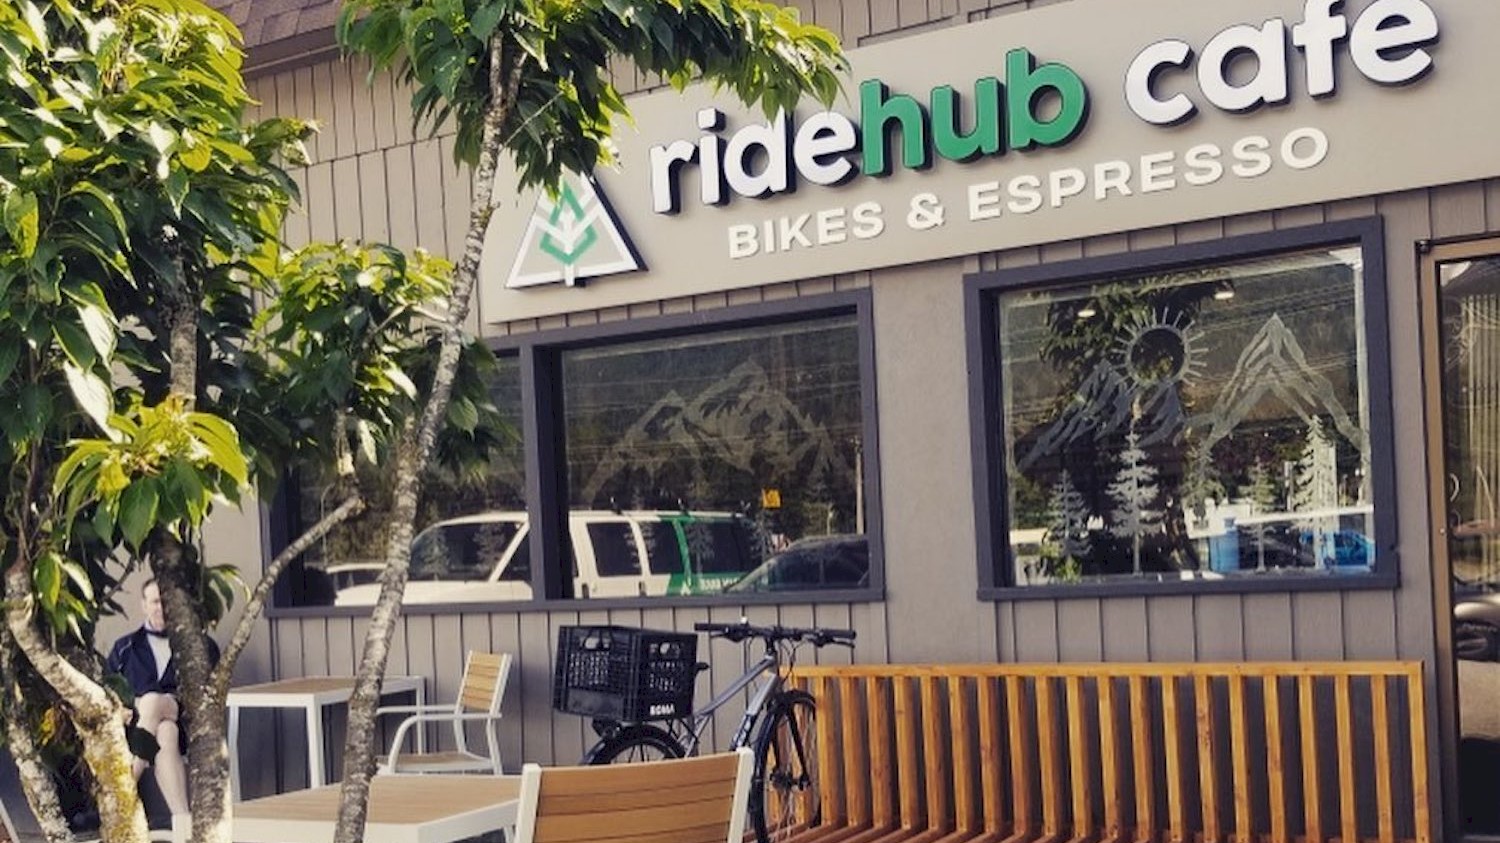 RideHub Cafe